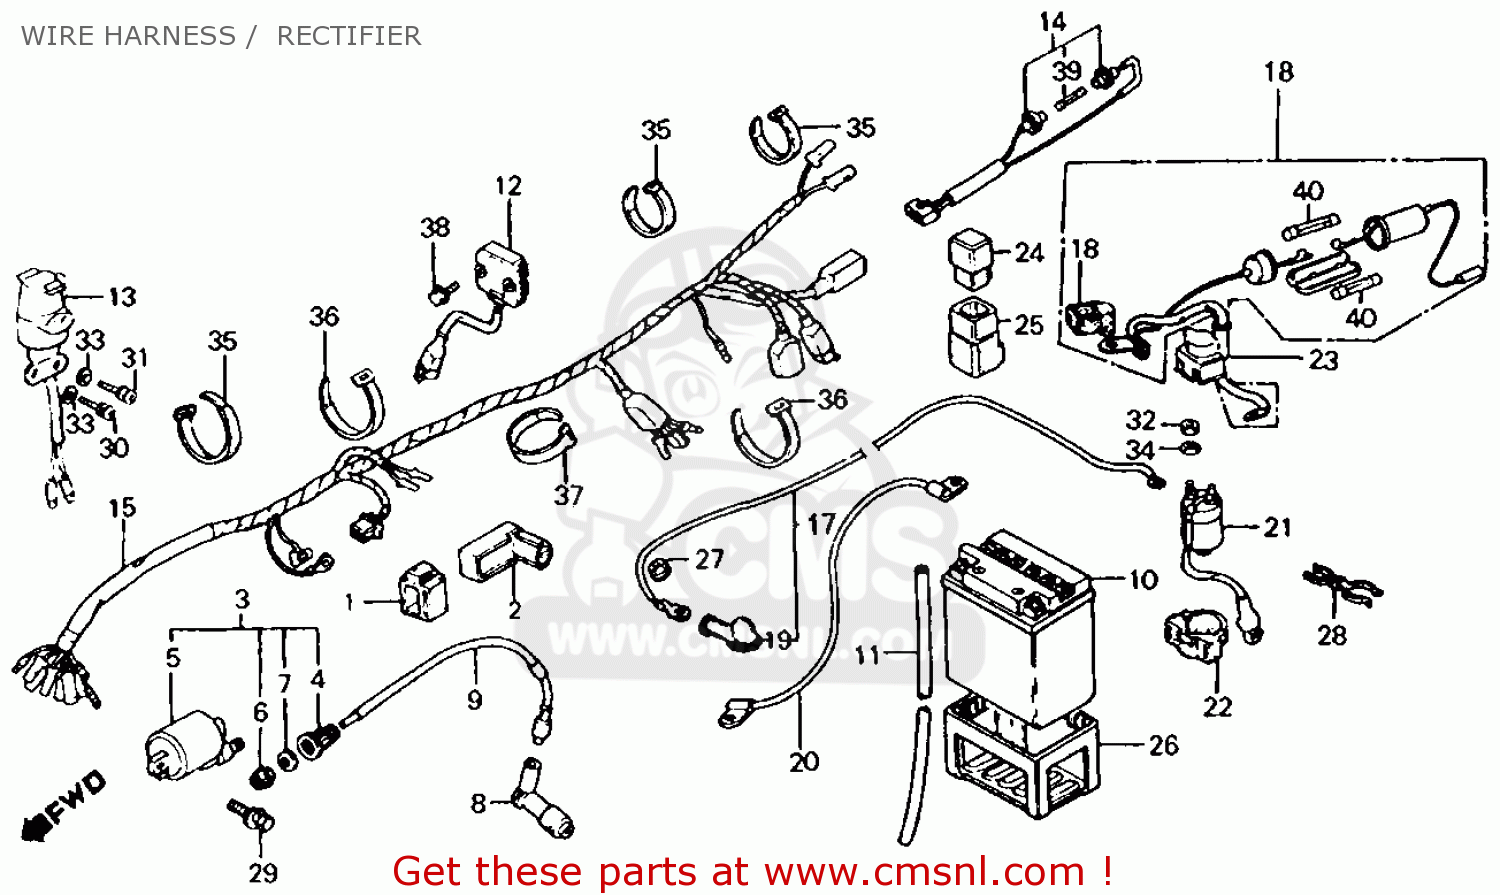 Honda 125m wiring schematic #5